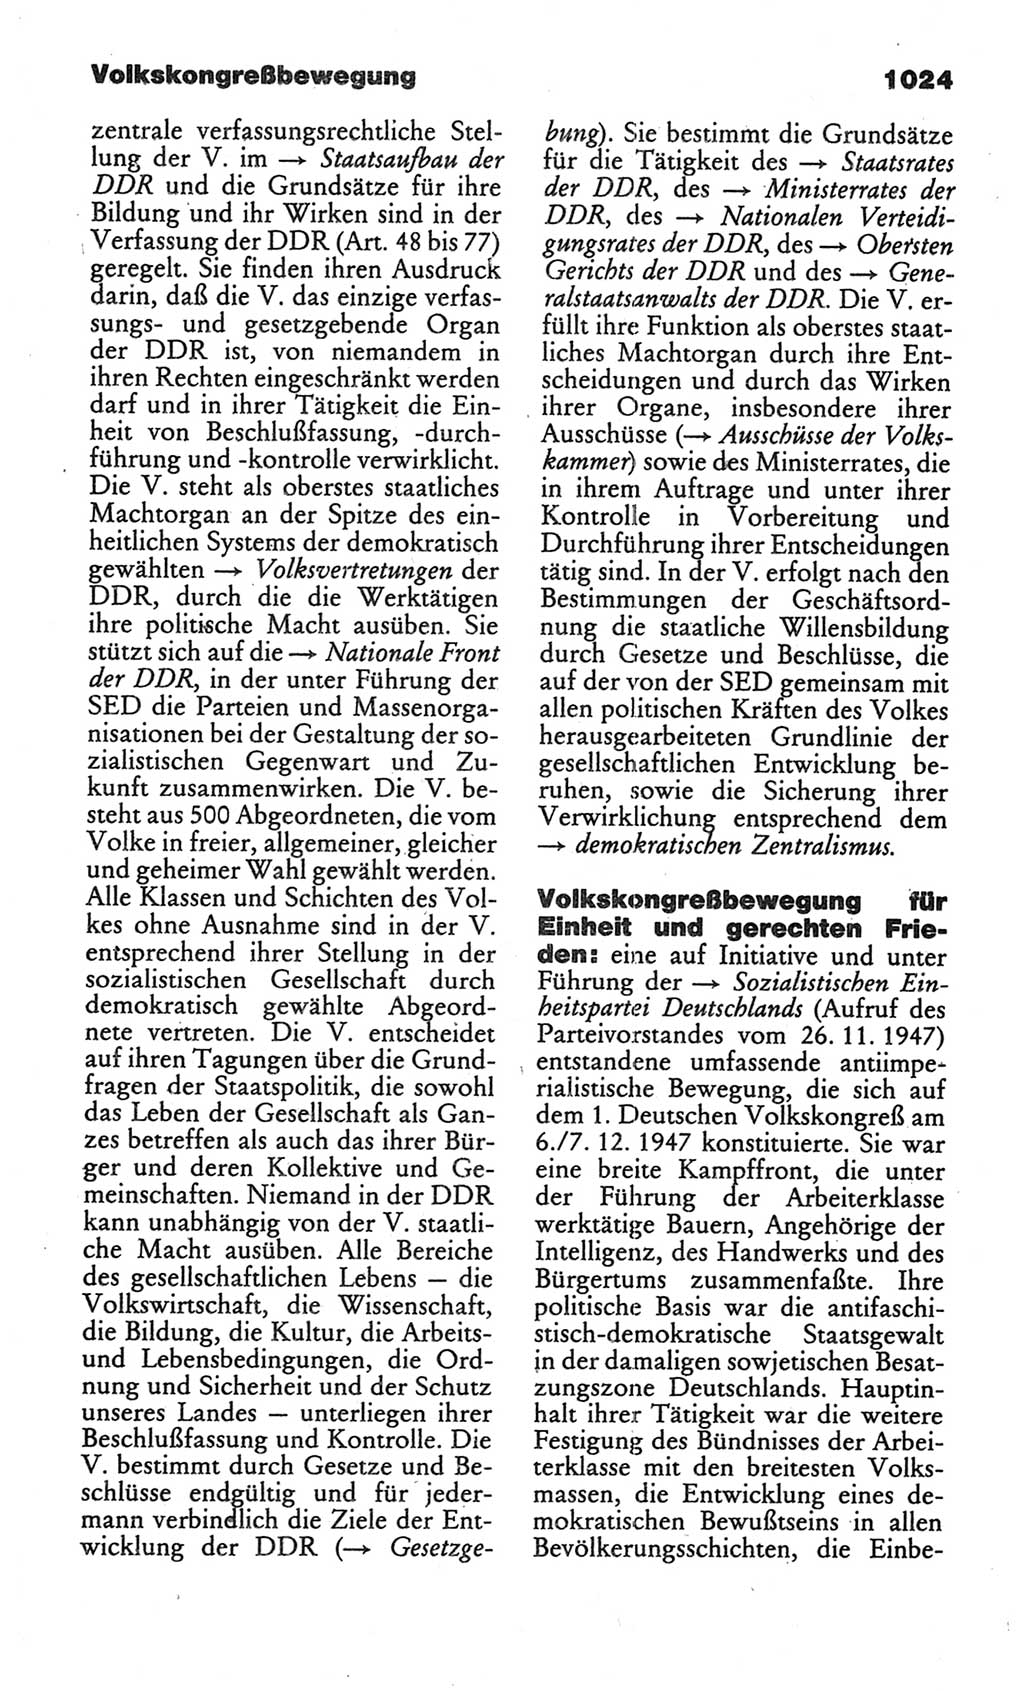 Kleines politisches Wörterbuch [Deutsche Demokratische Republik (DDR)] 1986, Seite 1024 (Kl. pol. Wb. DDR 1986, S. 1024)